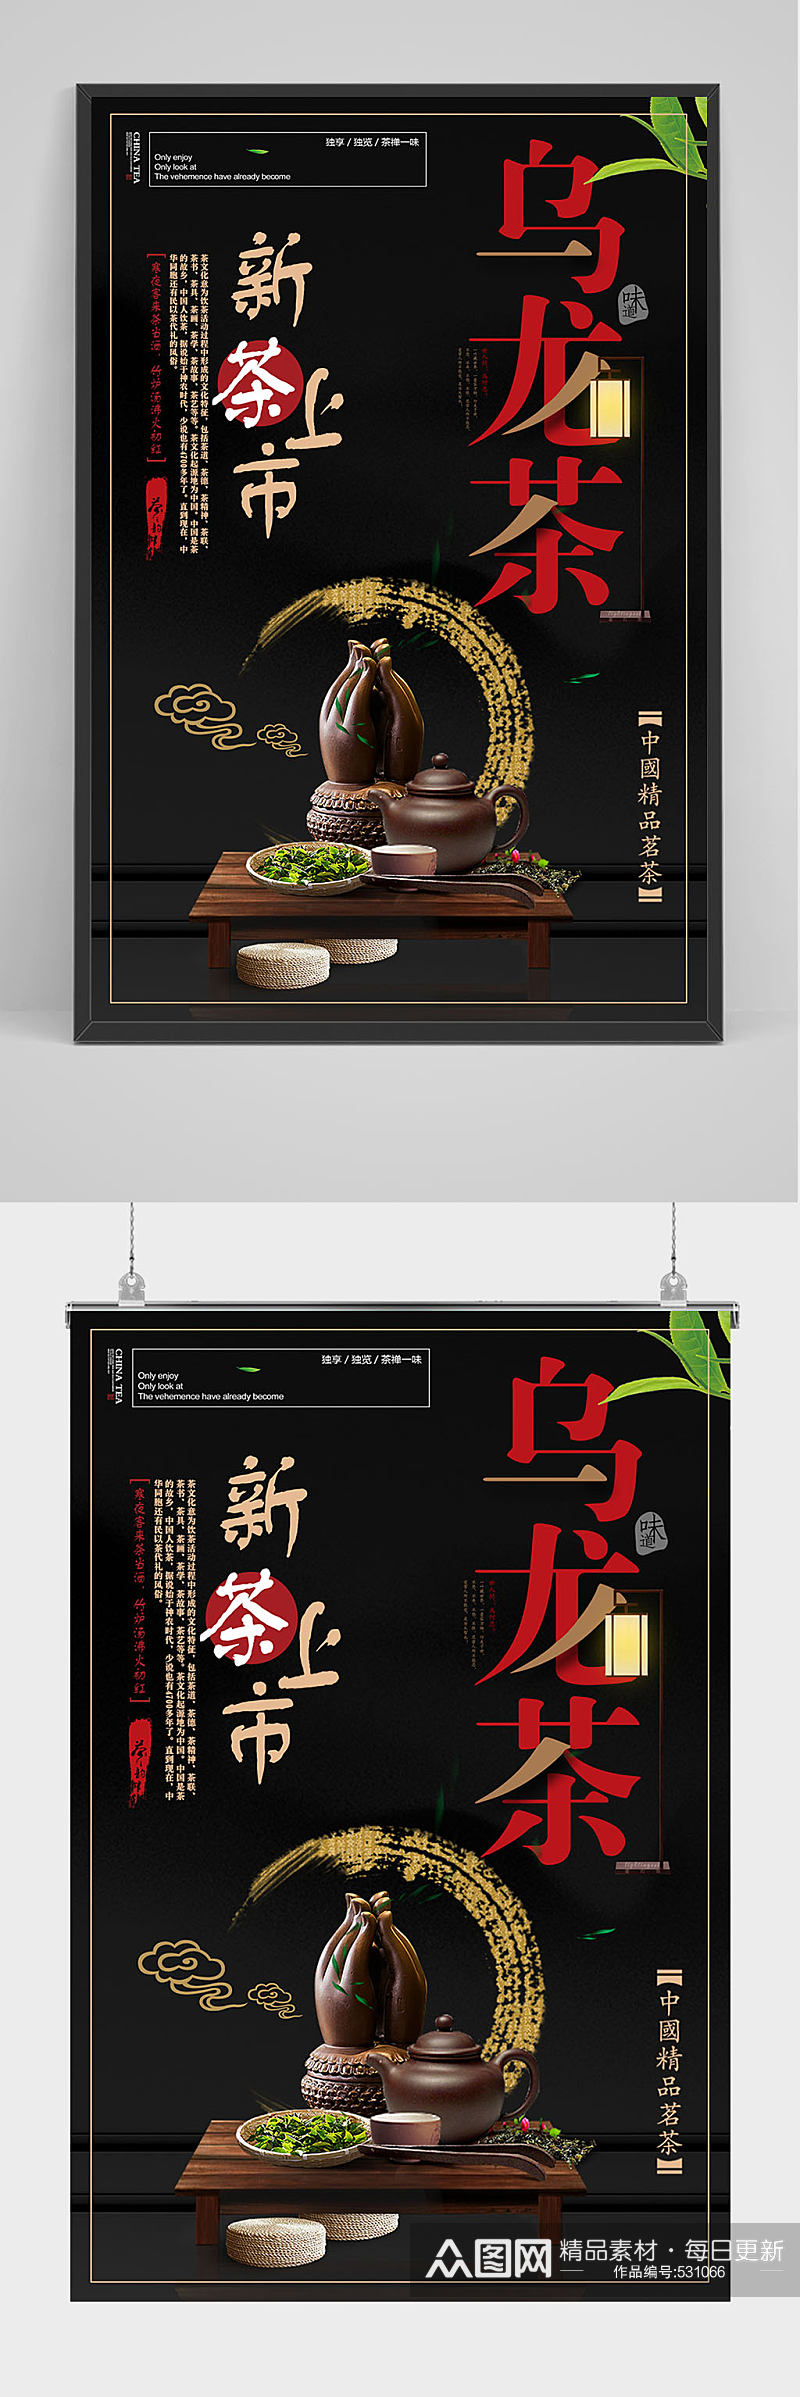 精品新品上市乌龙茶海报设计素材